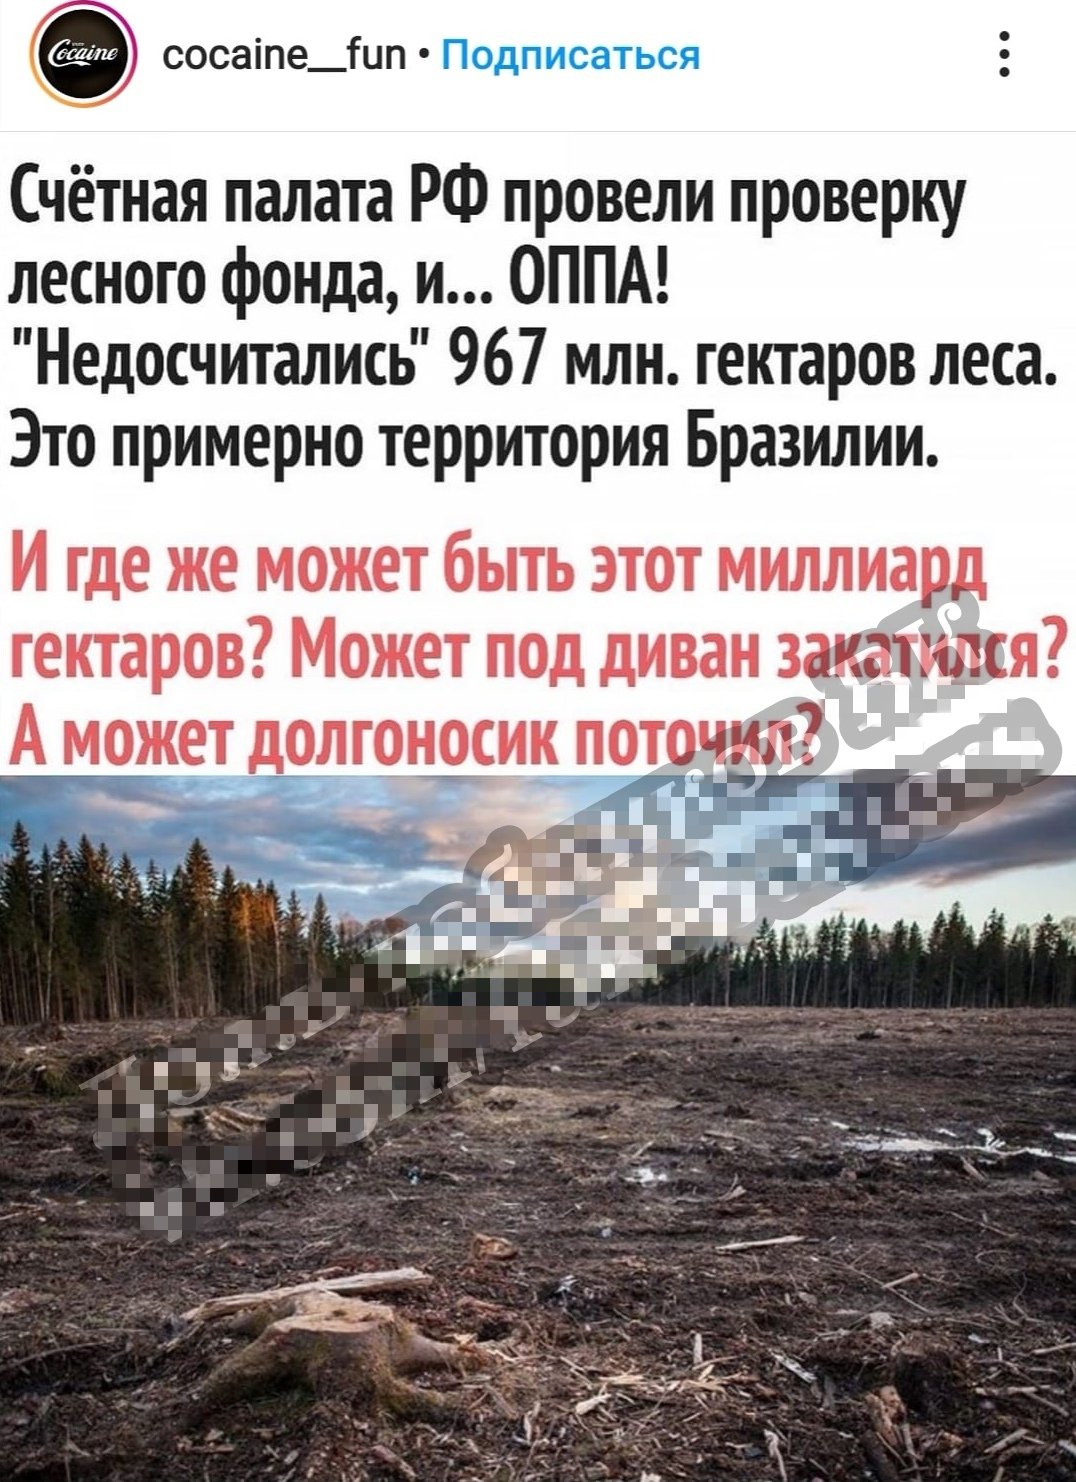 Площадь всех лесов России составляет чуть более 800 млн. га, хотя можно найти данные, что леса в России занимают 1,145 млн га территории и значит, что мы остались совсем без деревьев. Правда что ли?